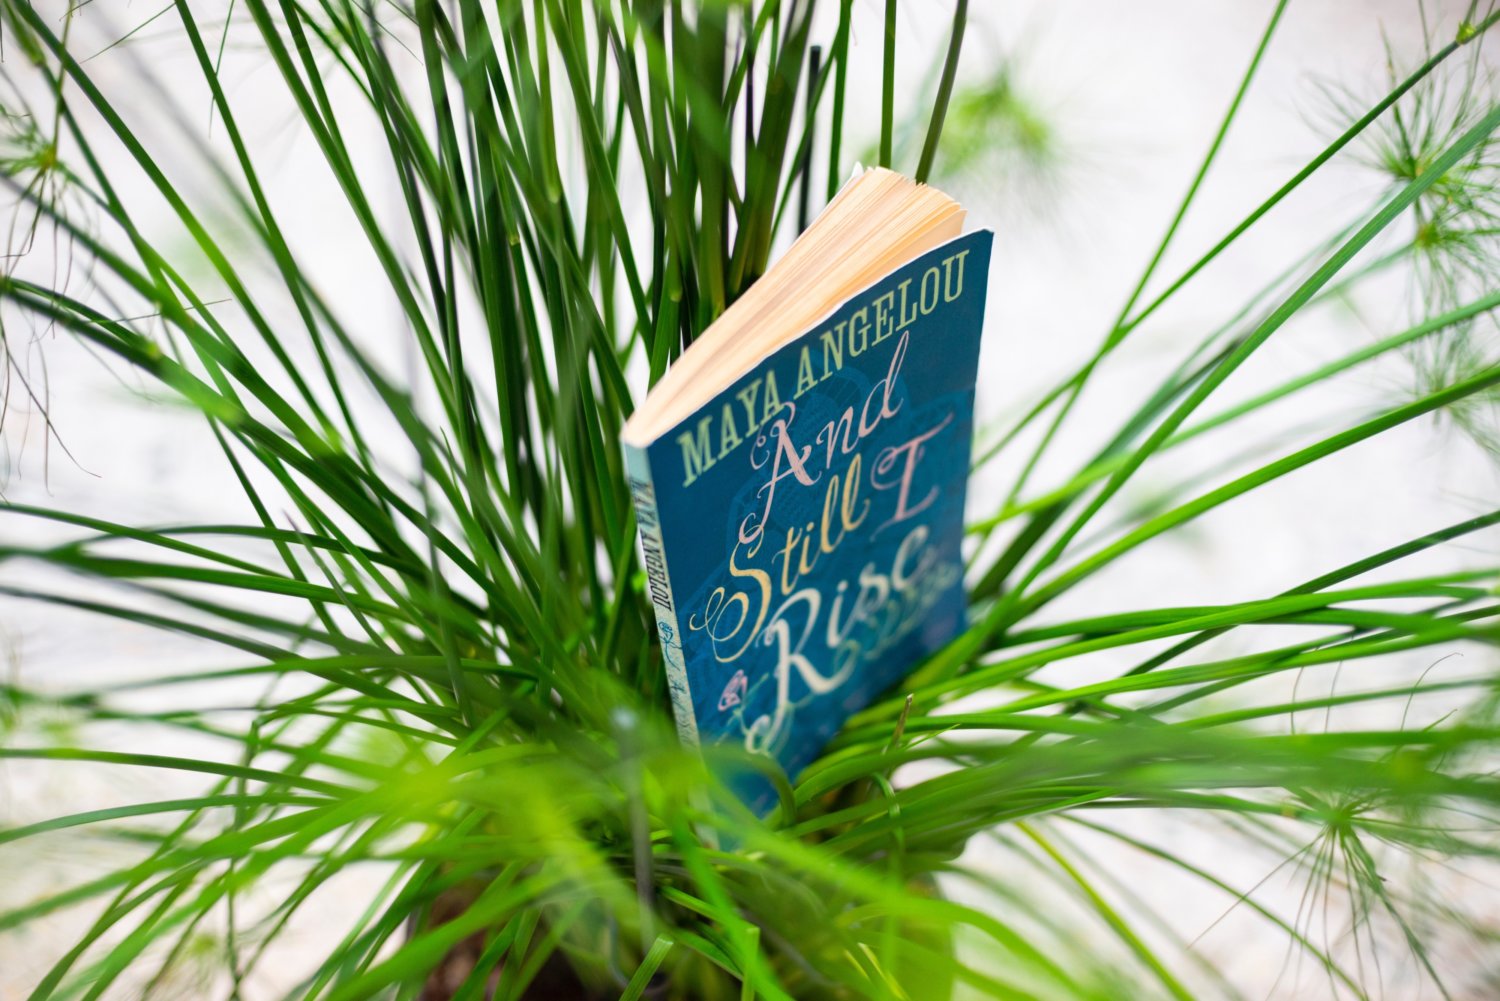 Ein grüner Strauch mit dem Buch von Mary Angelou "And Still I rise" in der Mitte. Installationsansicht von Saddie Choua, lamb chops should not be overcooked, 2019.